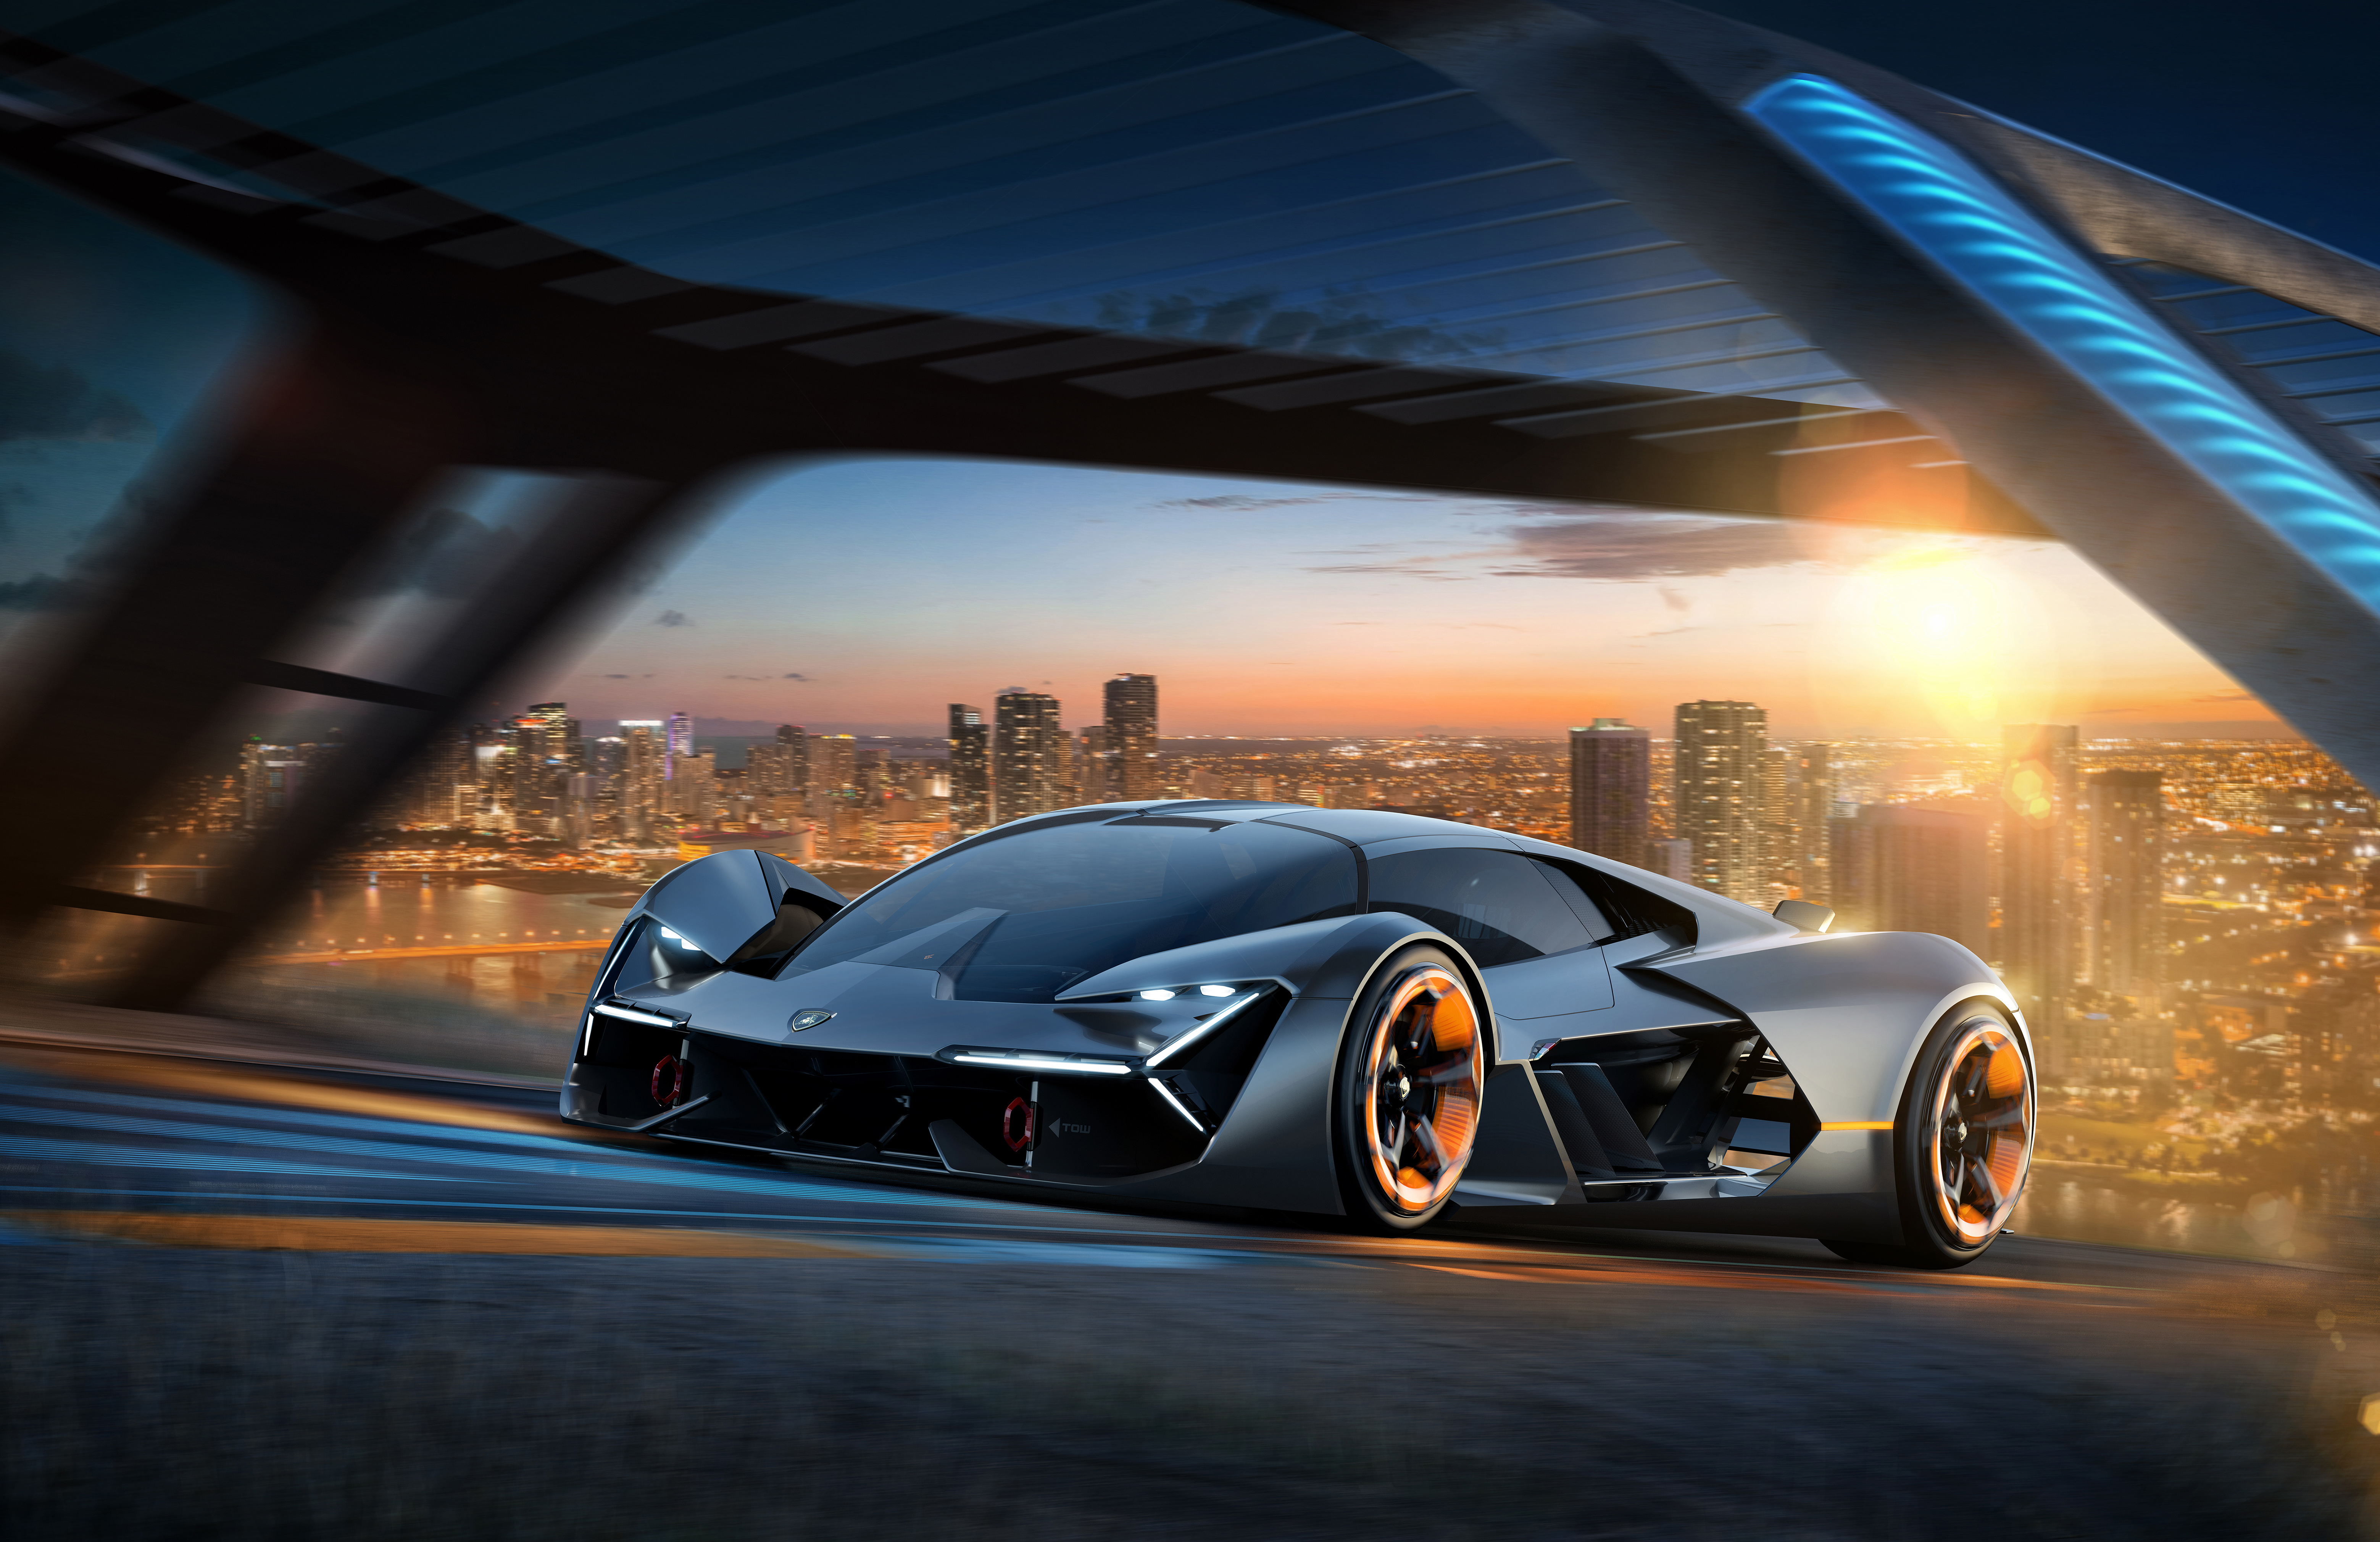 Big Rig Safety & Lamborghini Concept